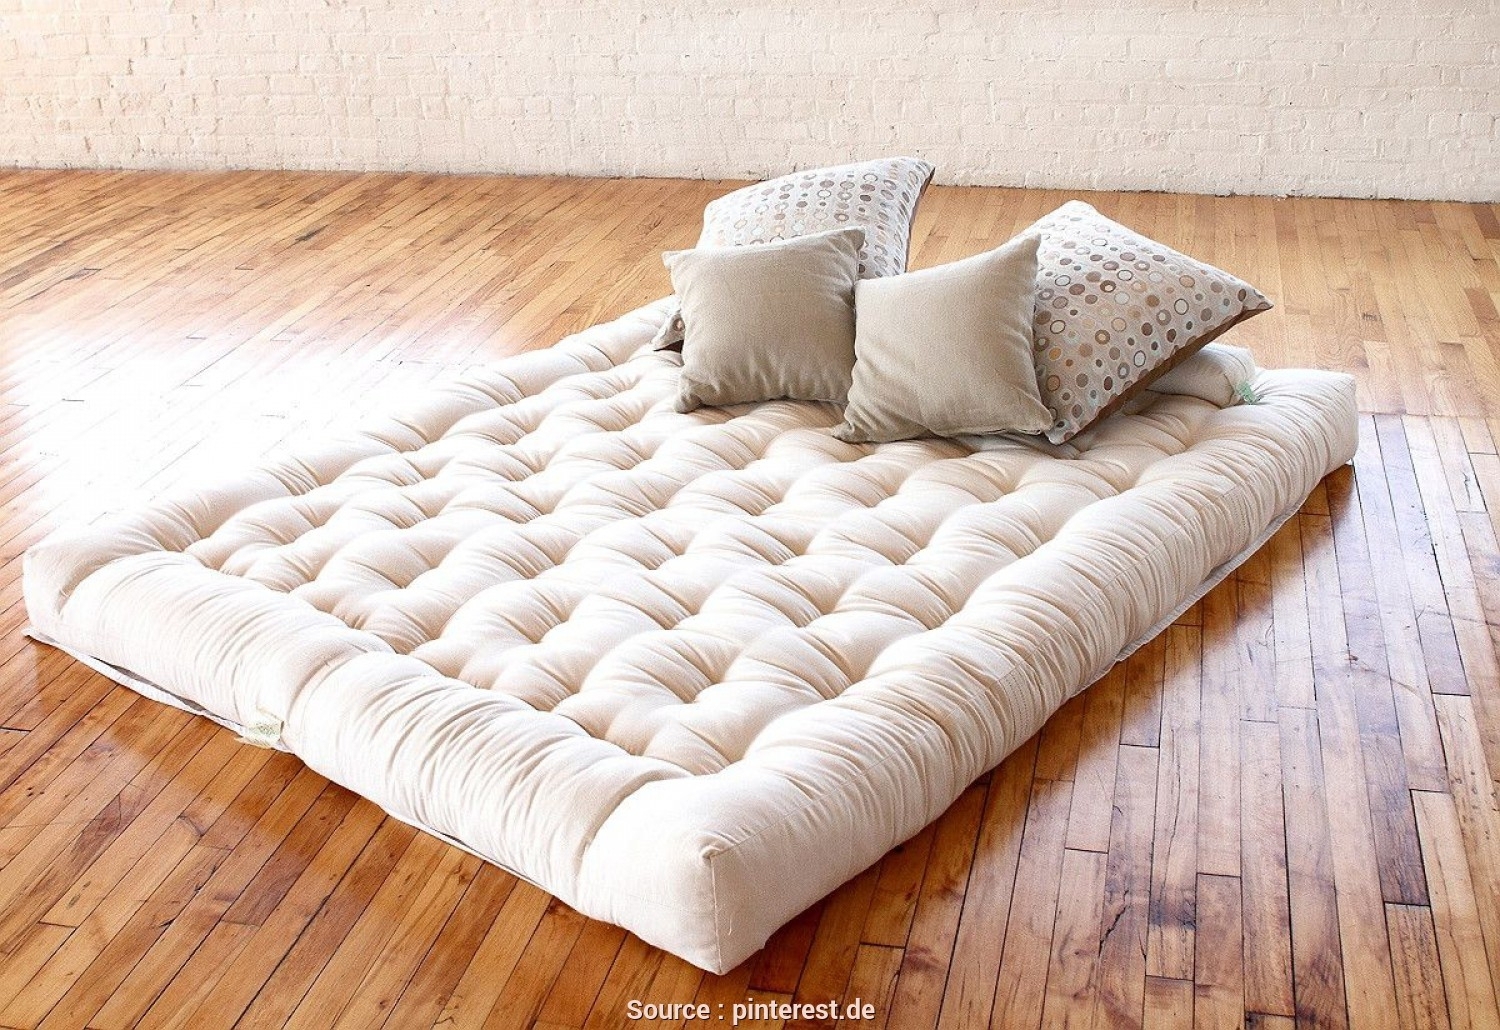 sleep philosophy all natural cotton filled mattress